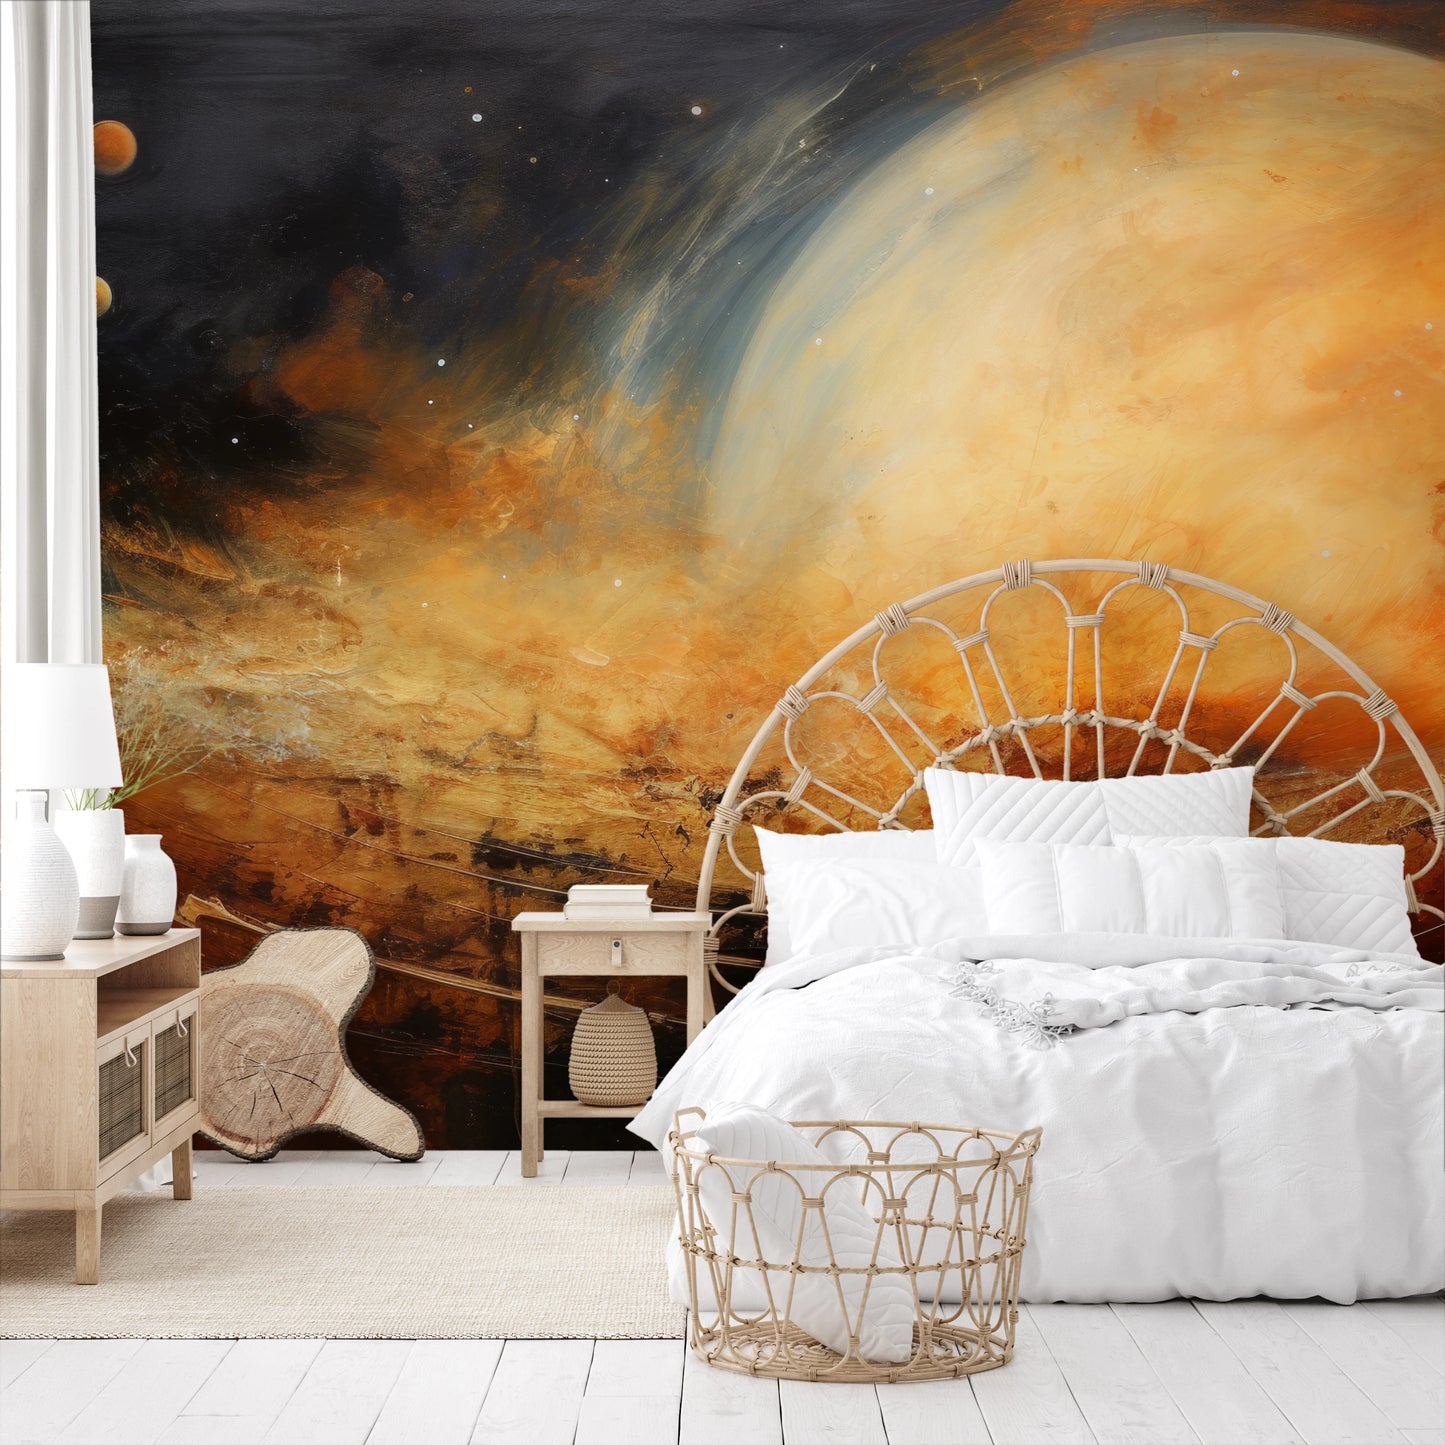 Fototapeta malowana o nazwie Moonlit Glory pokazana w aranżacji wnętrza.